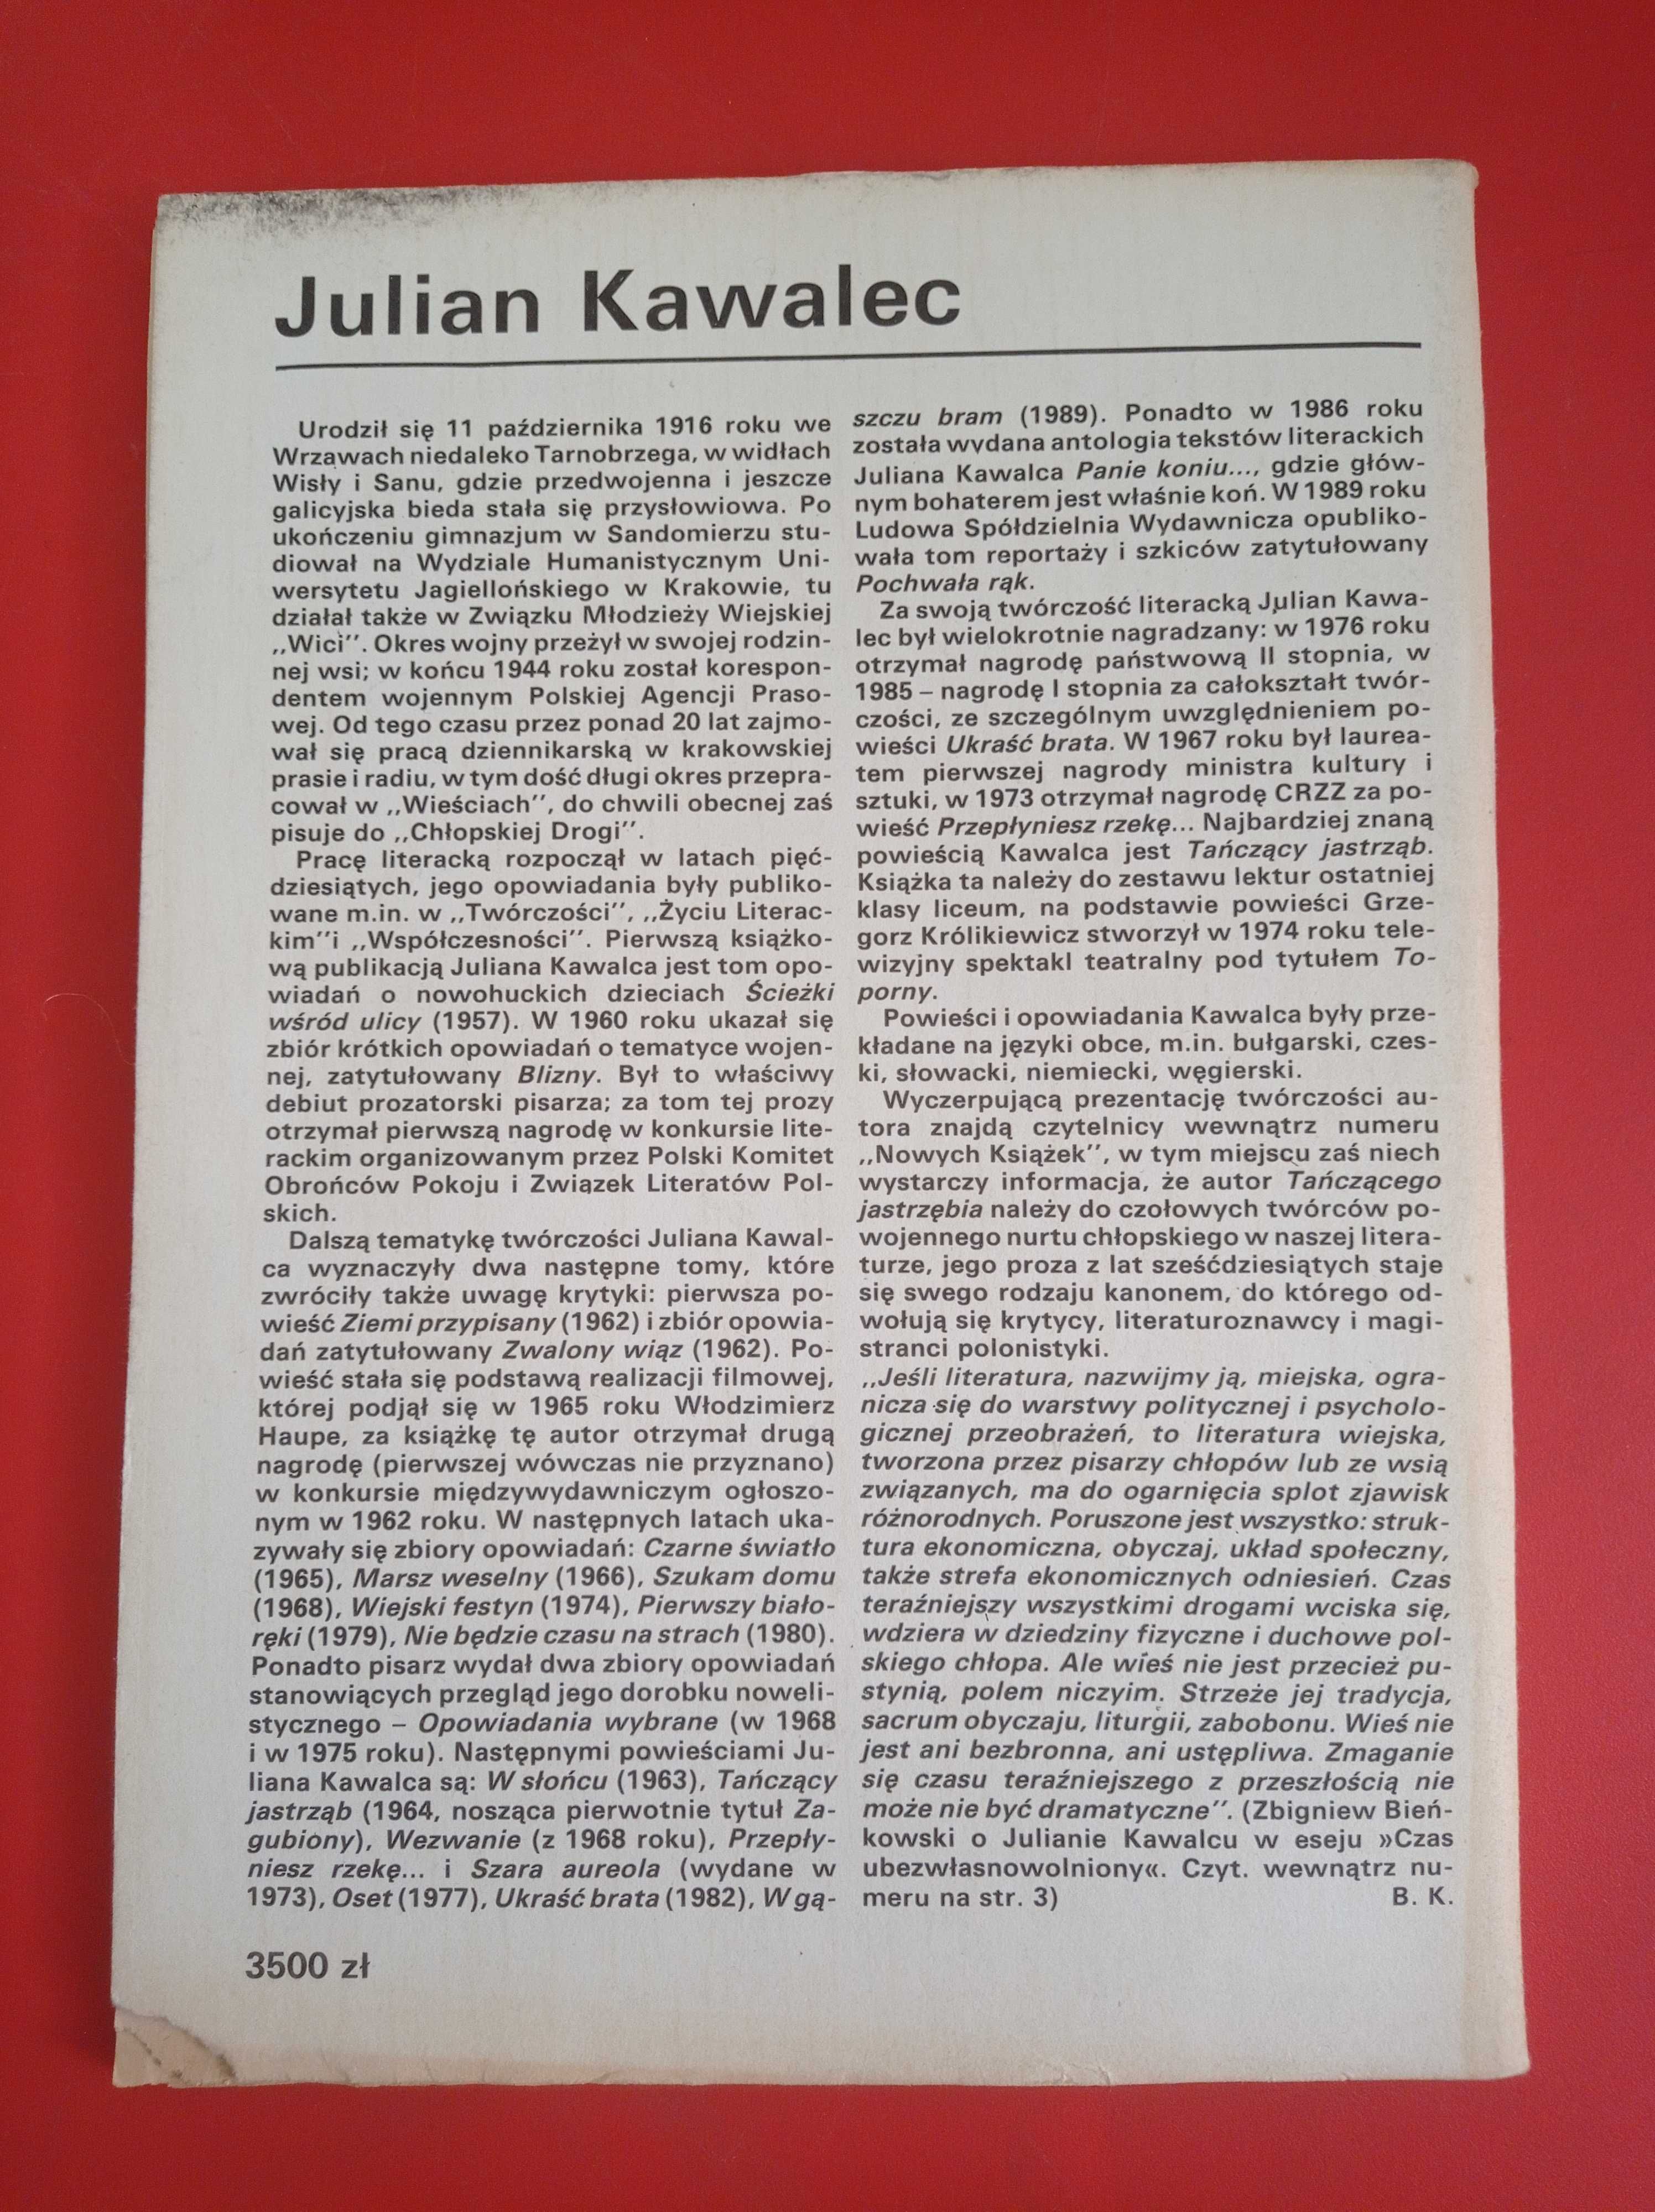 Nowe książki, nr 1 styczeń 1990, Julian Kawalec